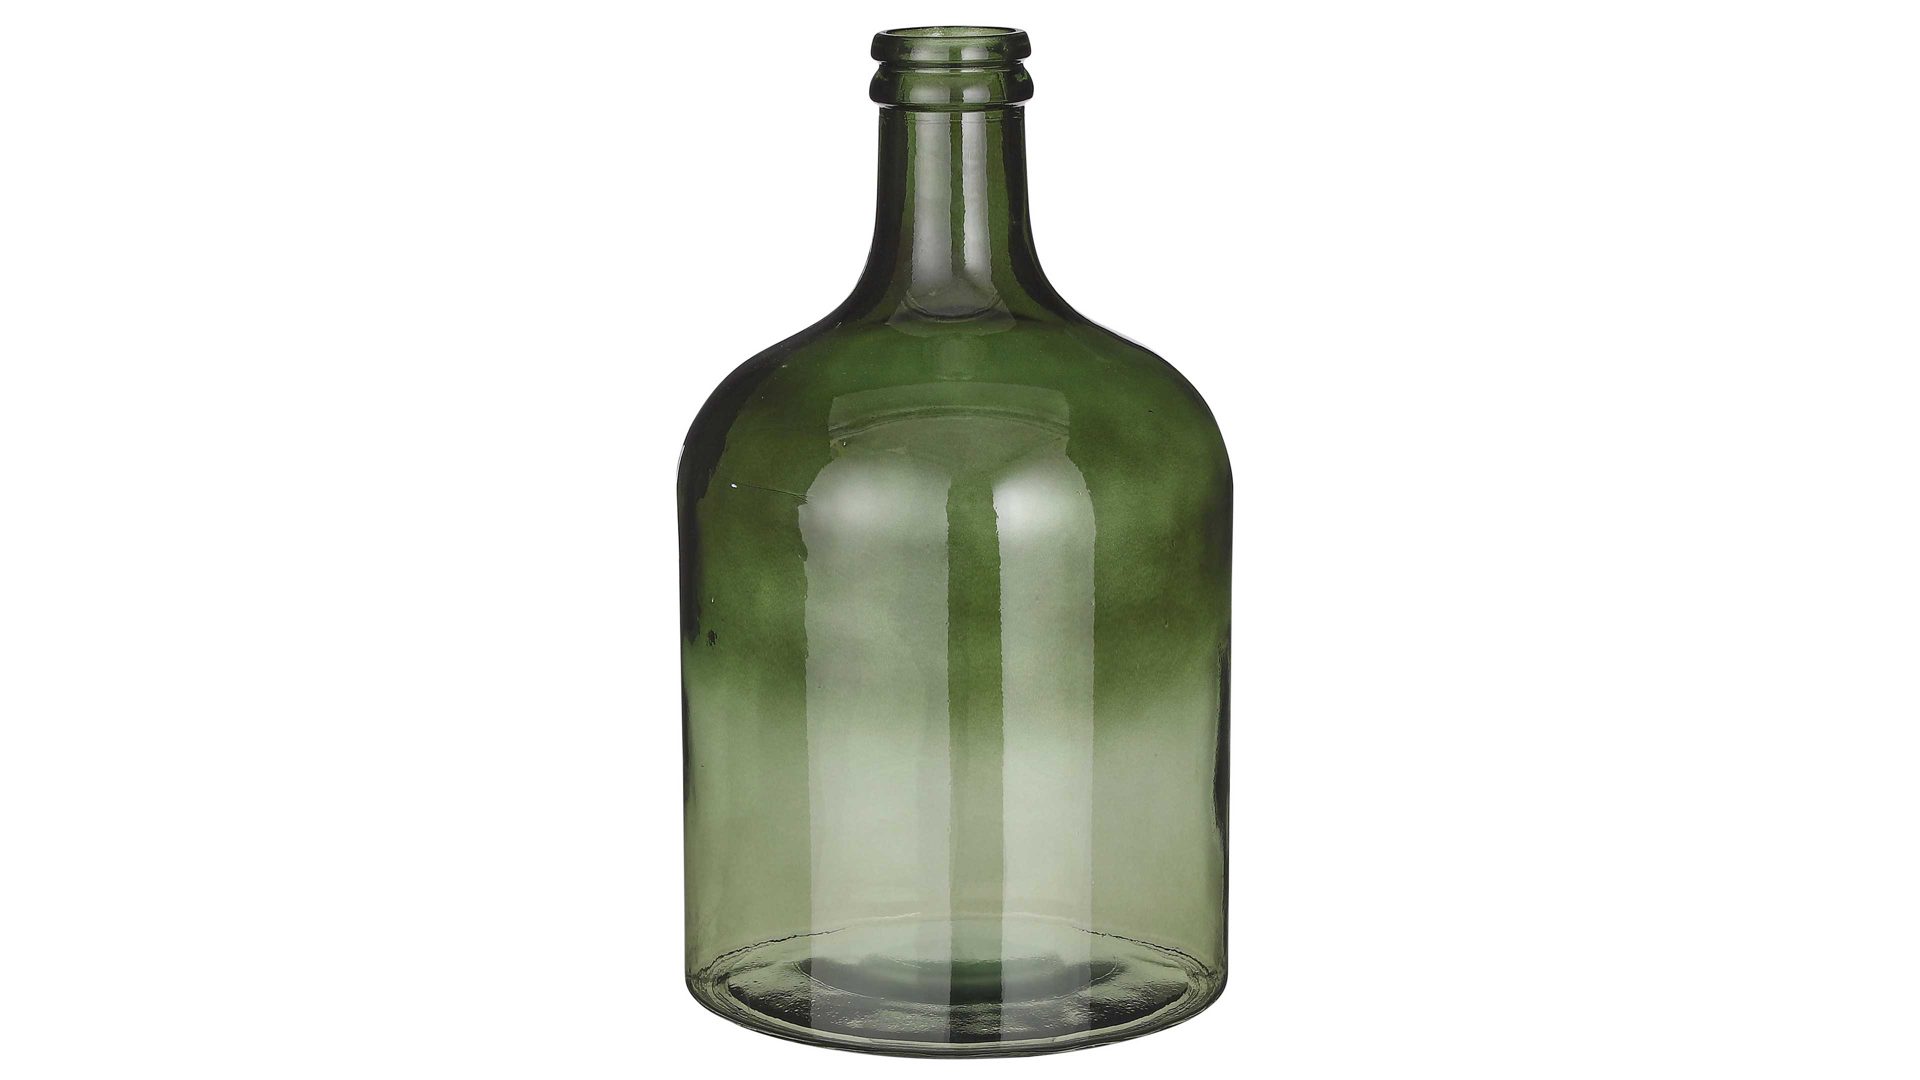 Vase Edelman® aus Glas in Grün Boden-Flaschenvase Vamos grünes Recyclingglas - Höhe ca. 43 cm